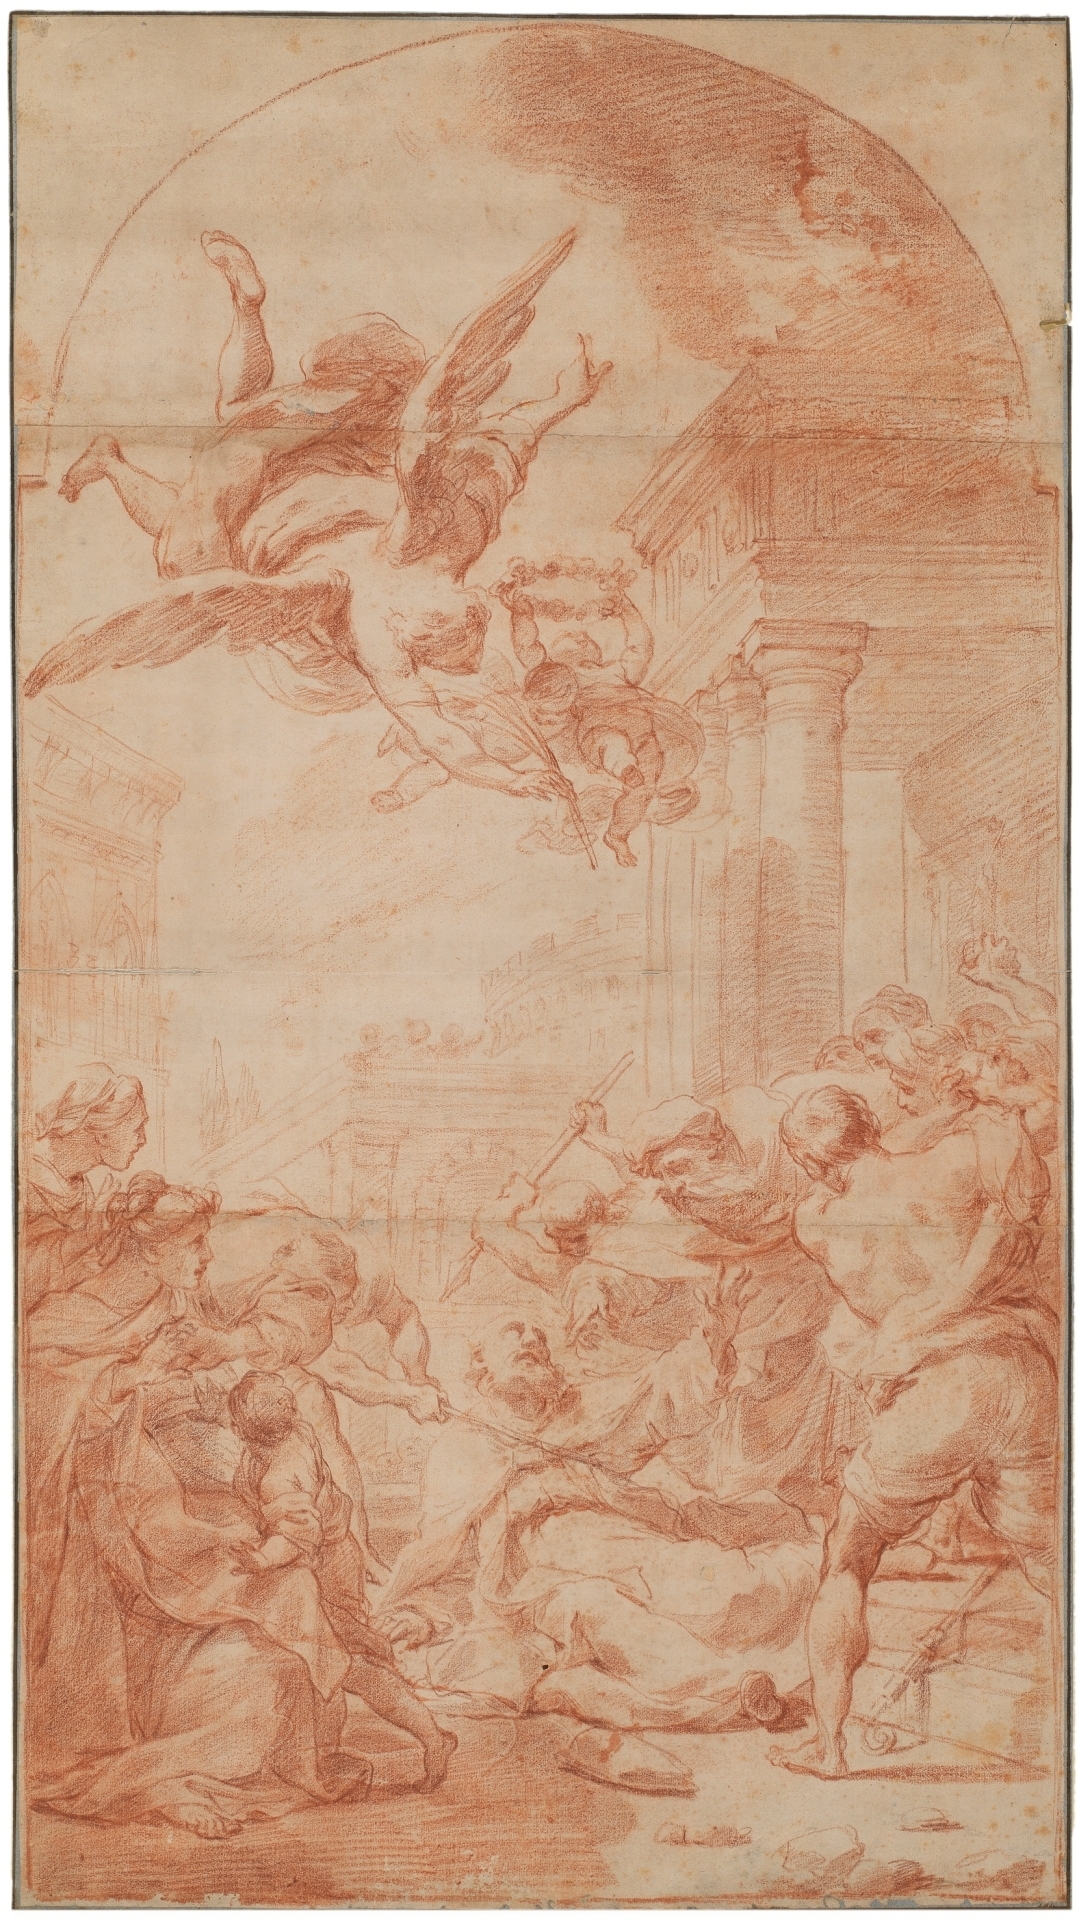 Martirio de San Eusebio de Gandolfi expuesto en el Museo del Prado.